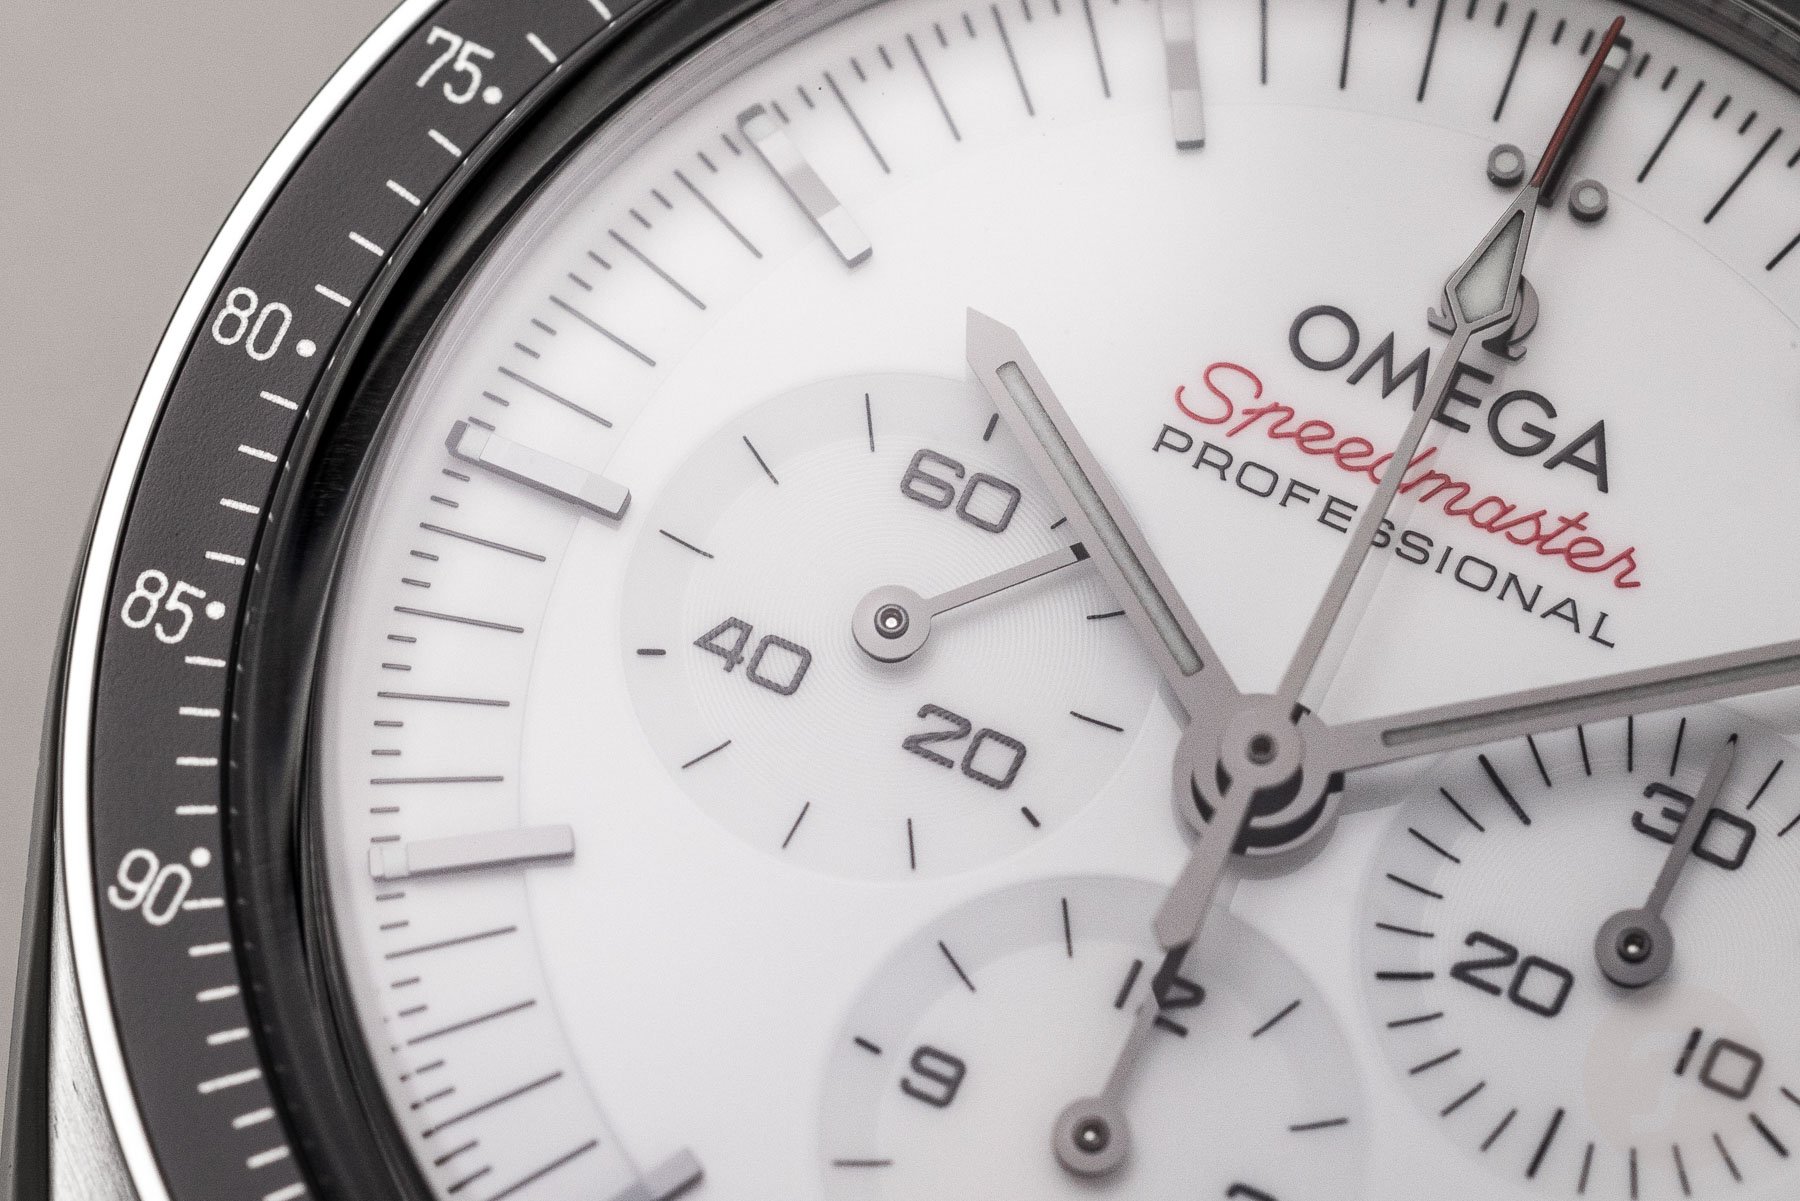 Omega-Speedmaster-Professional-310.30.42.50.04.001-white-dial-5.jpg